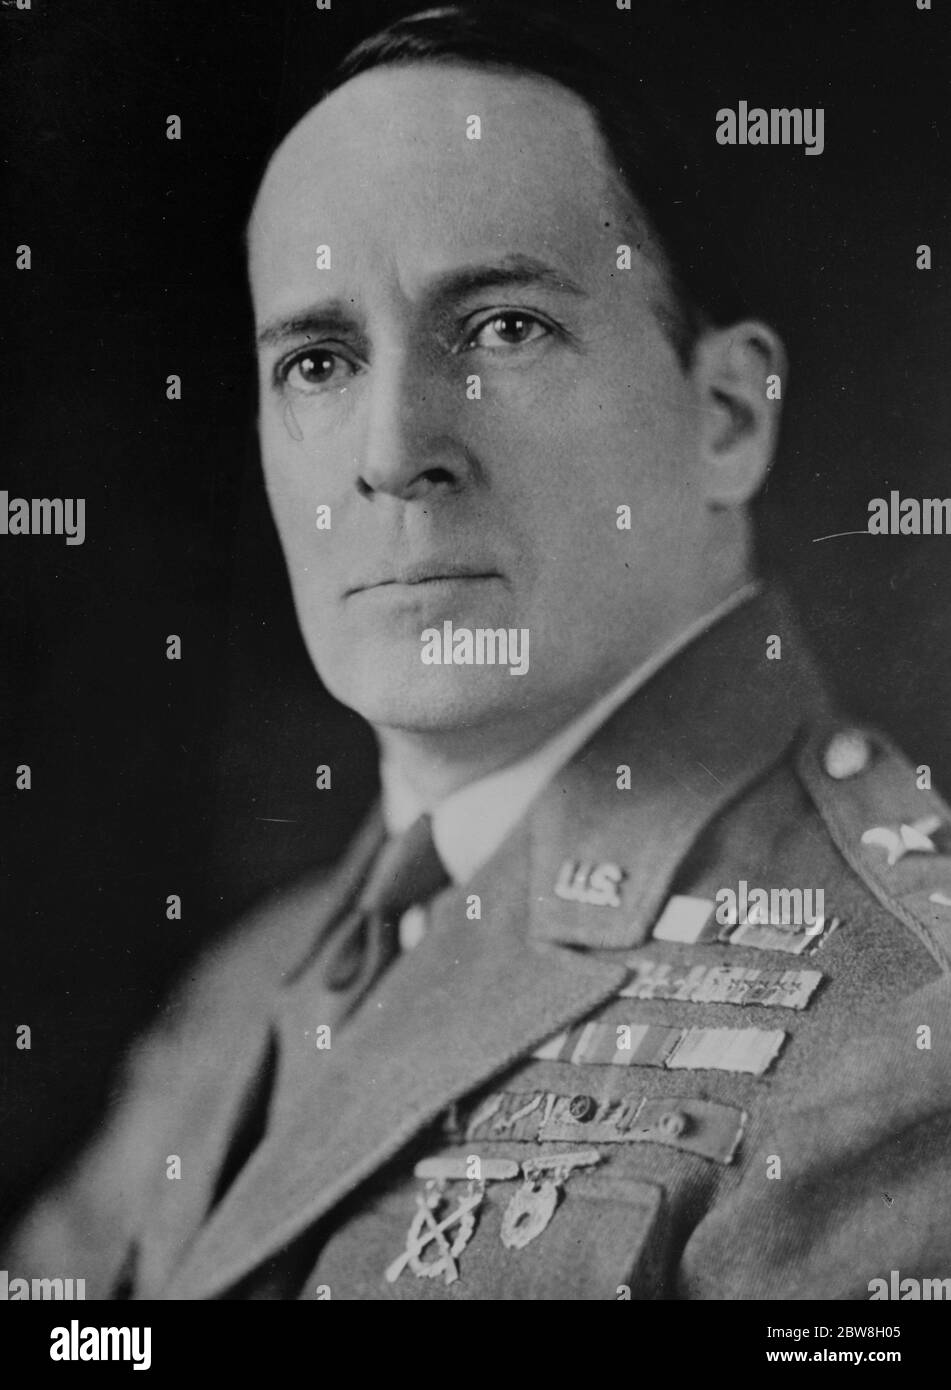 £61,000,000 per l'esercito americano più grande . Il generale Douglas McArthur , che raccomanda per la fornitura immediata di un programma di armi e attrezzature moderne da parte del Dipartimento di Guerra . 27 novembre 1933 Foto Stock